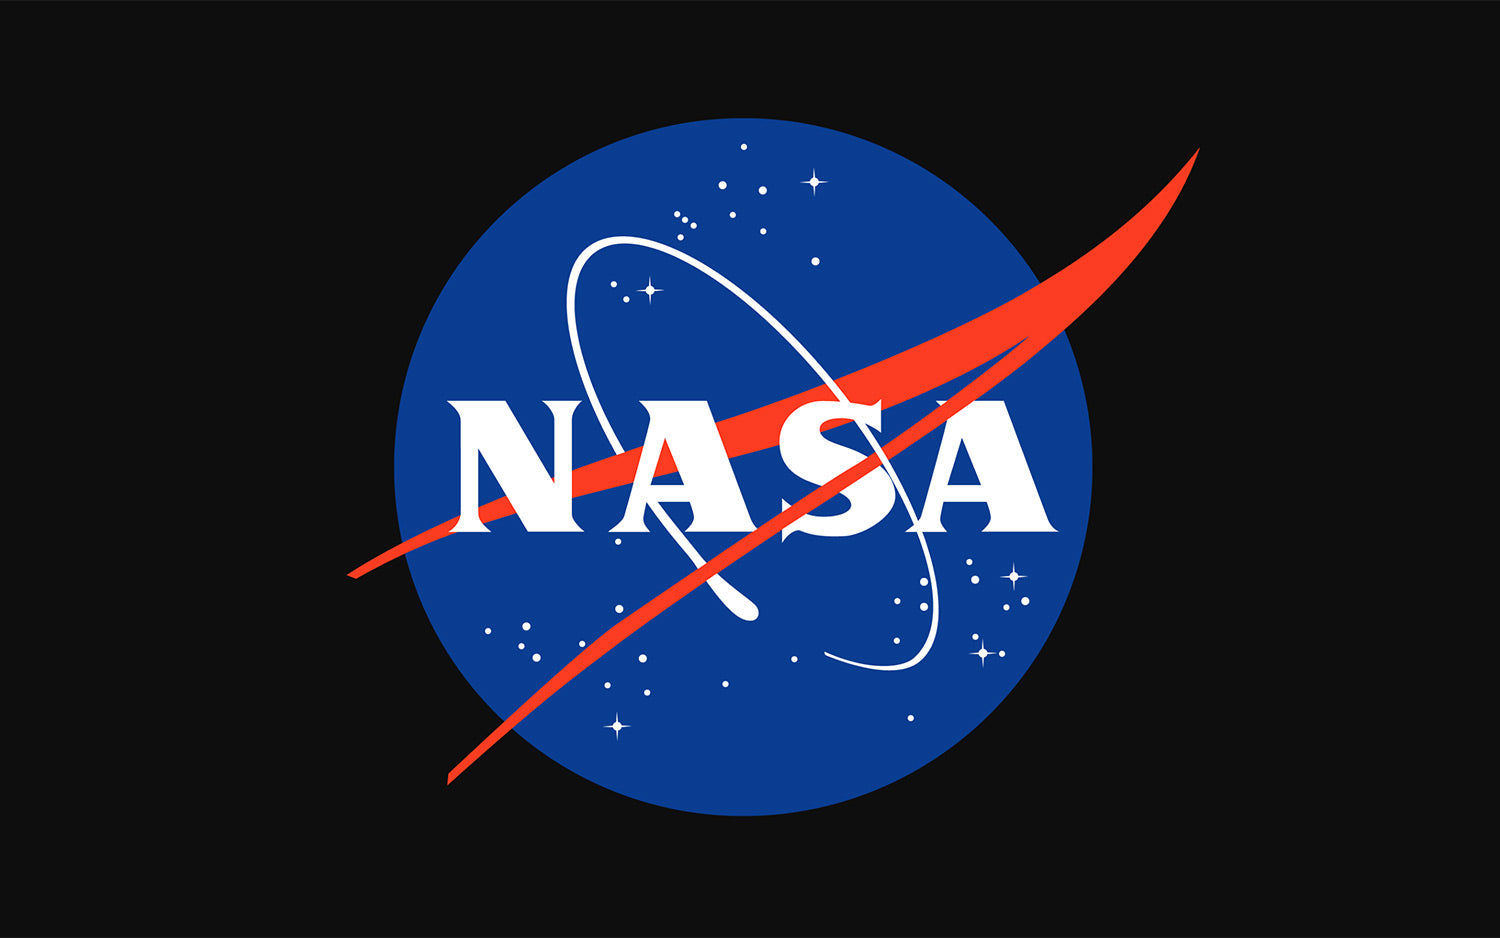 NASA Collection